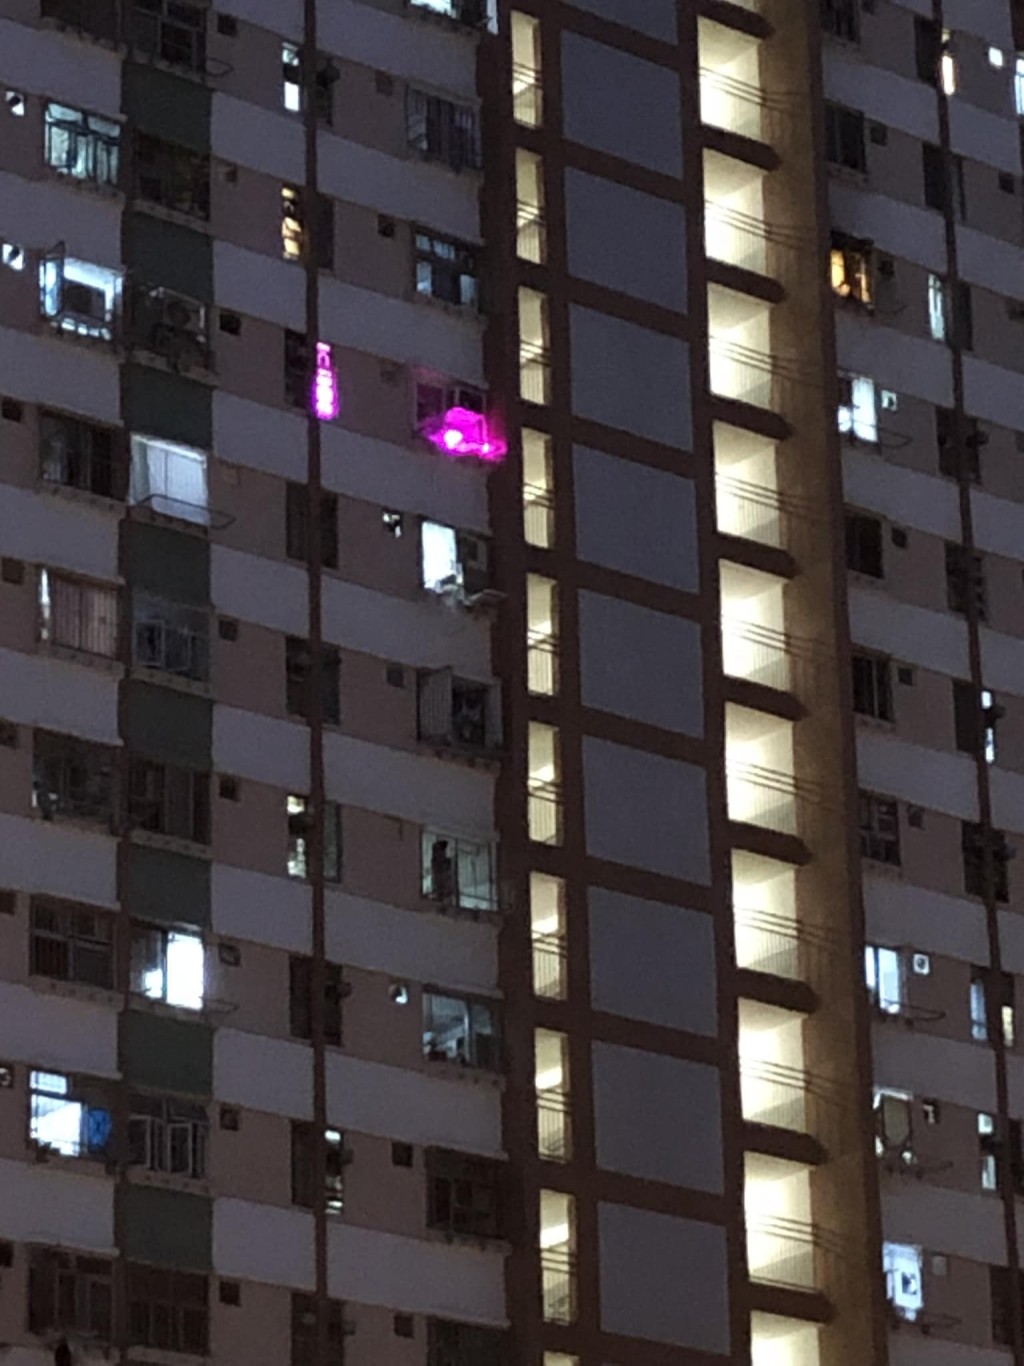 从网上疯传的相片可见单位亮起诱惑的紫色萤光。